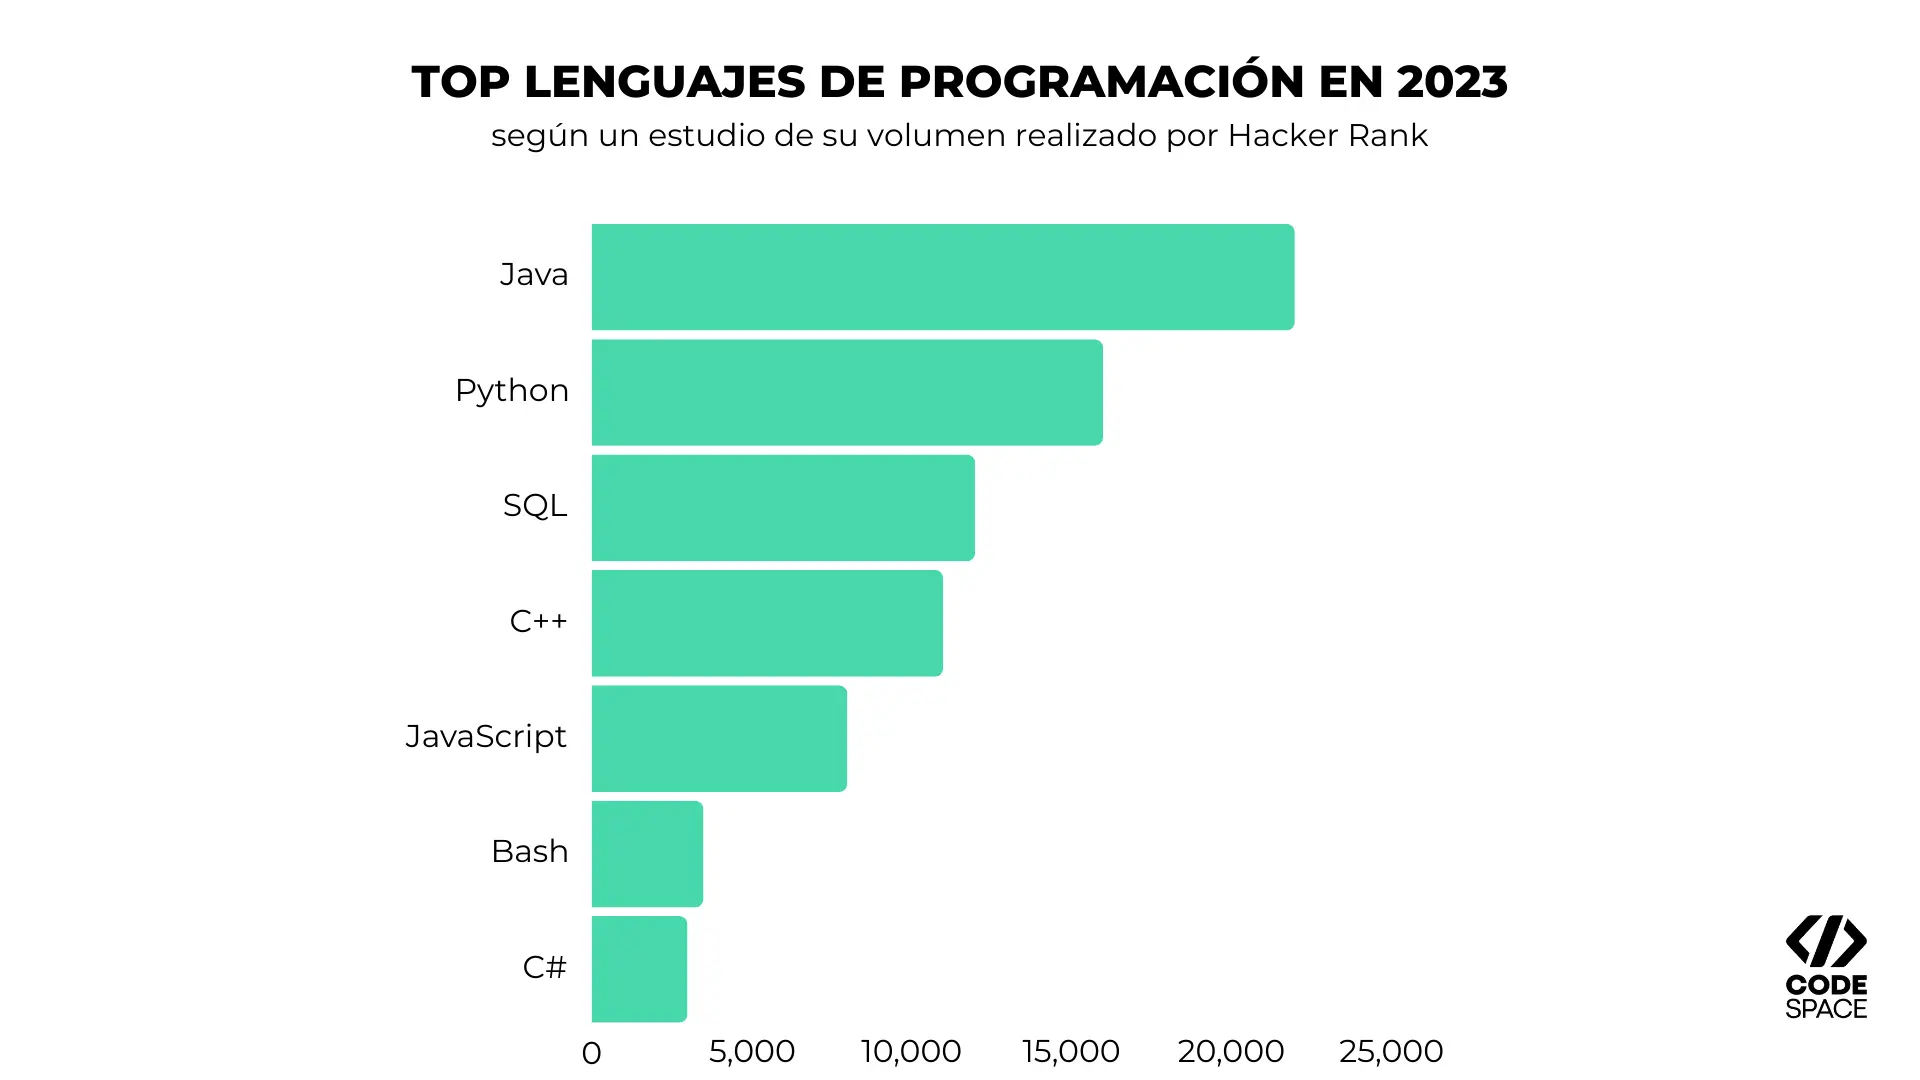 Gráfico sobre los lenguajes de programación más utilizados según su volumen